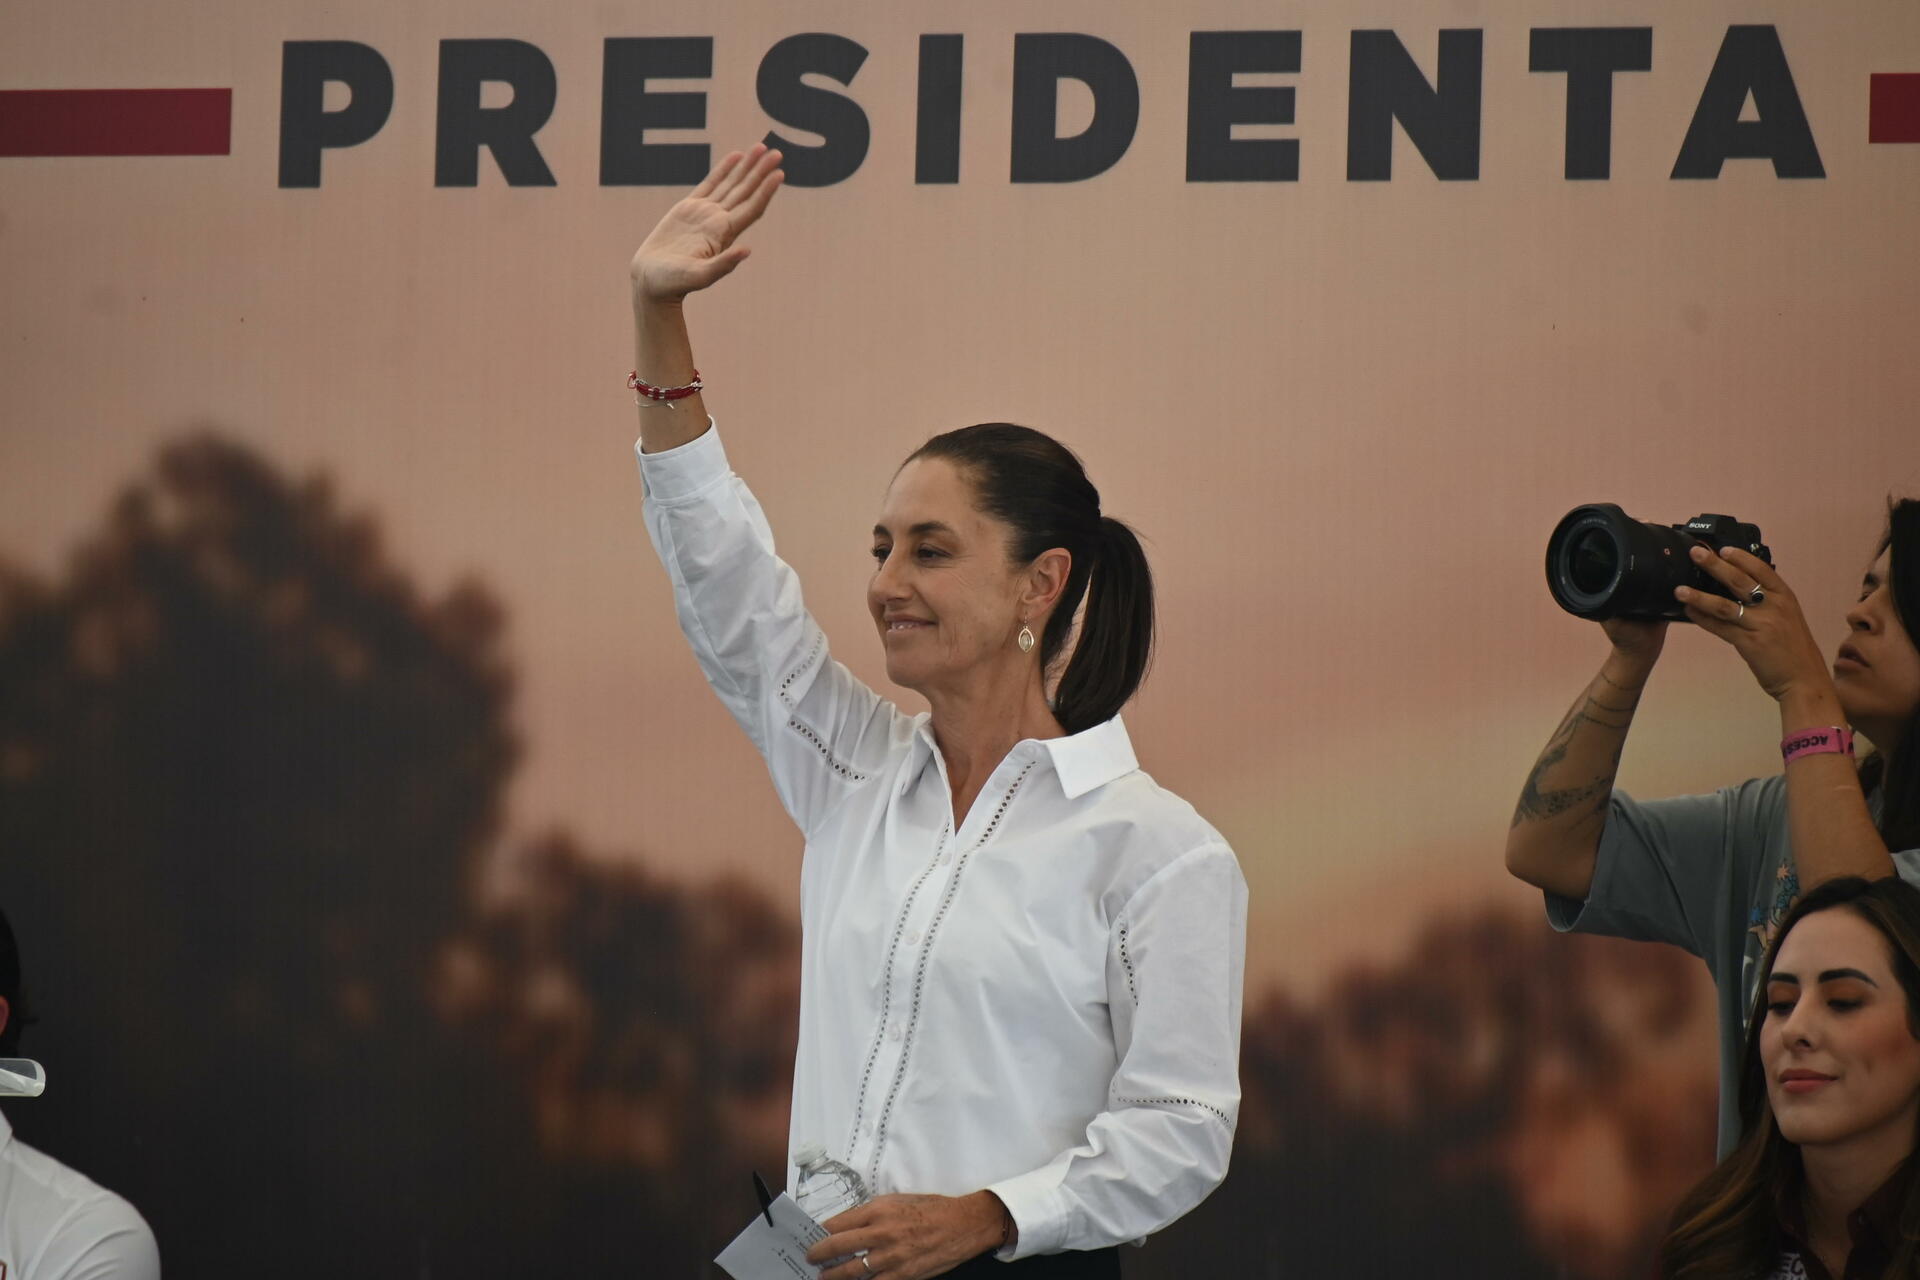 Creadoras celebran la llegada de una mujer a la presidencia, pero urgen a mejoras como elevar el presupuesto cultural (VERÓNICA RIVERA) 